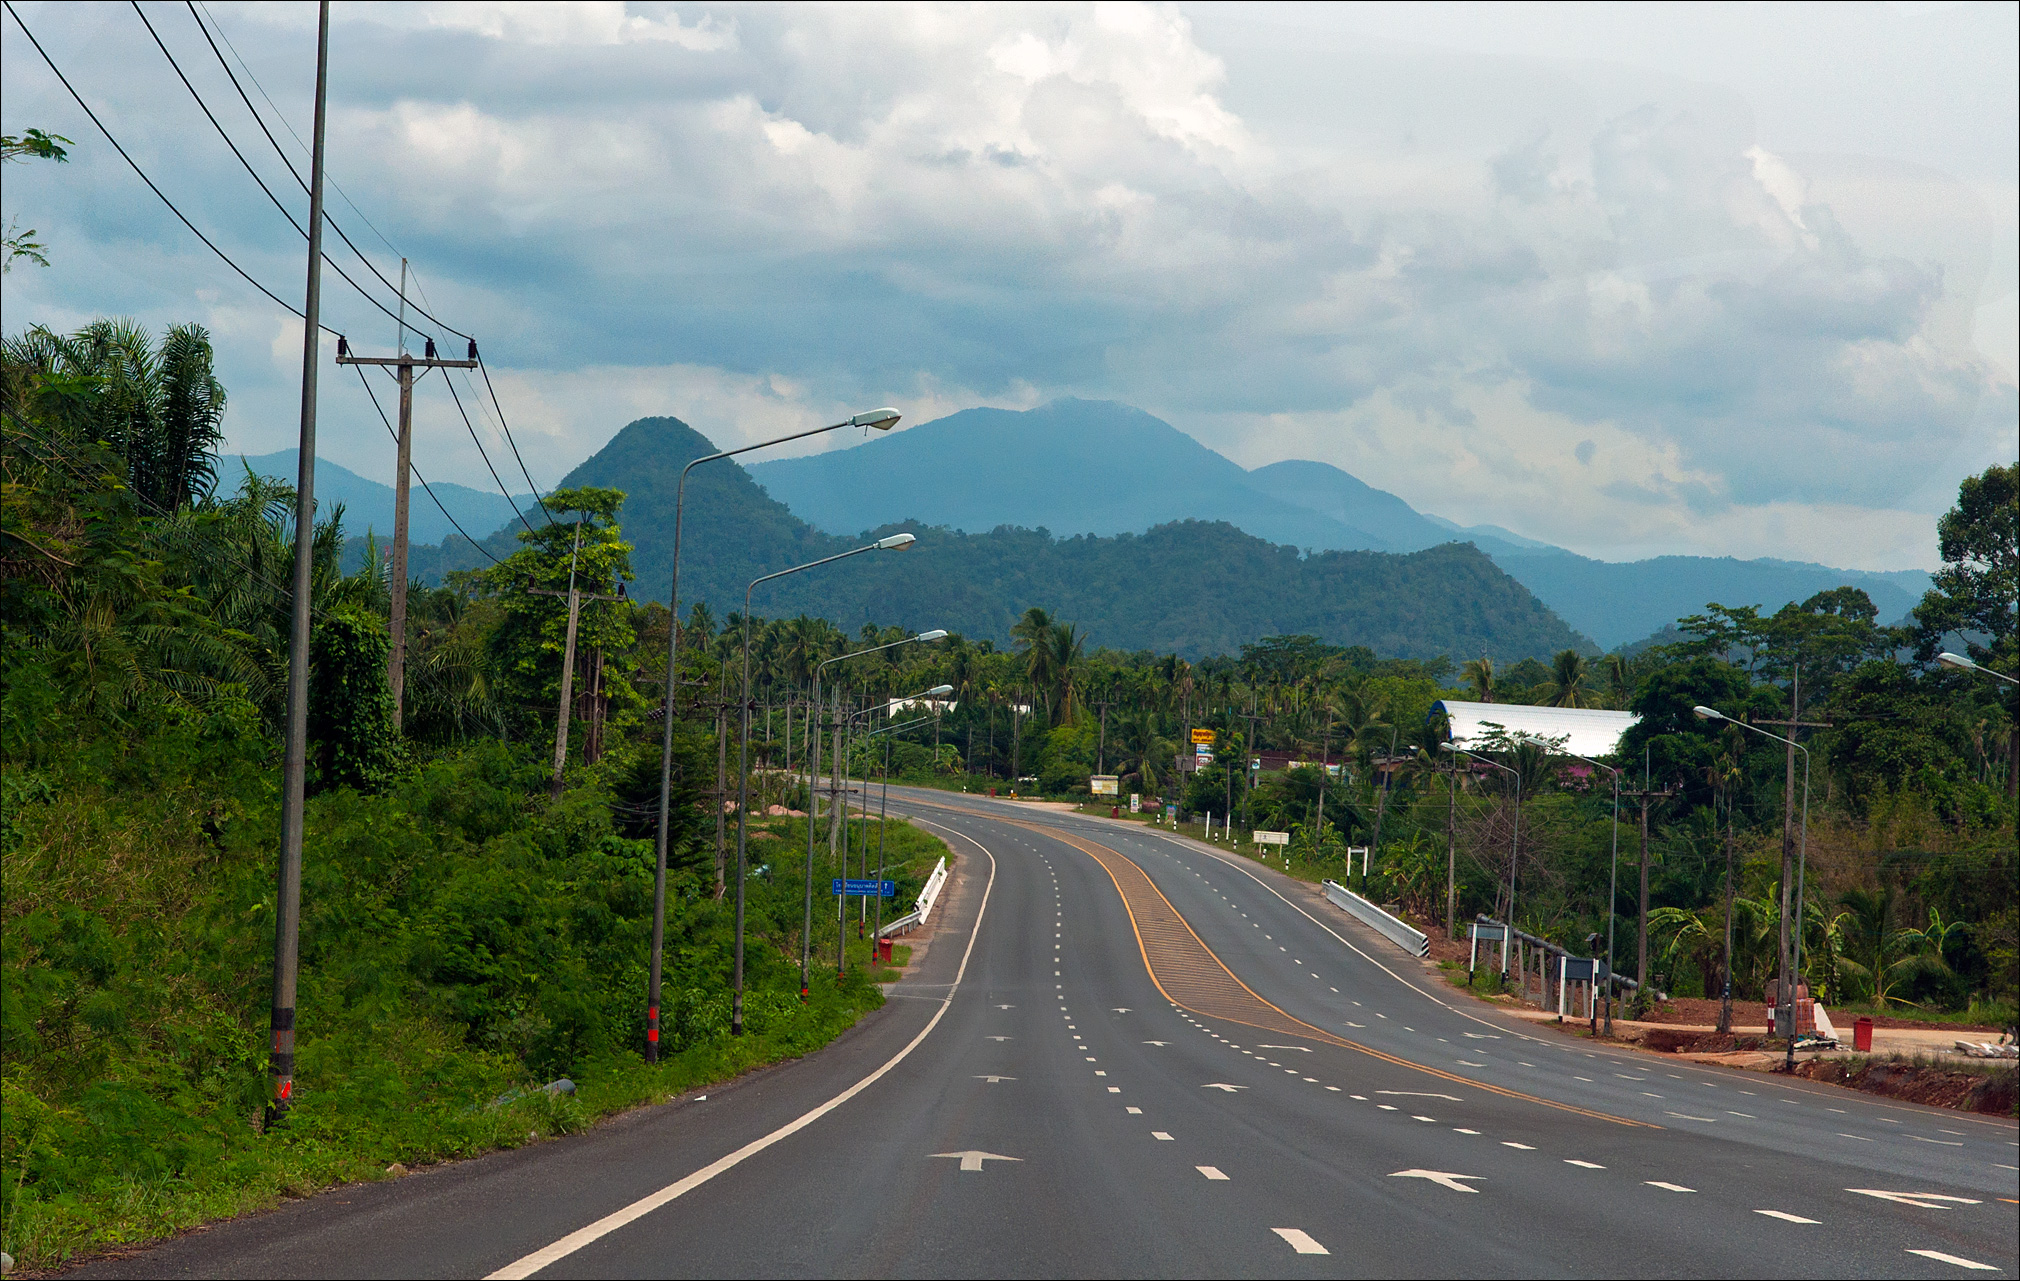 Thailand roads